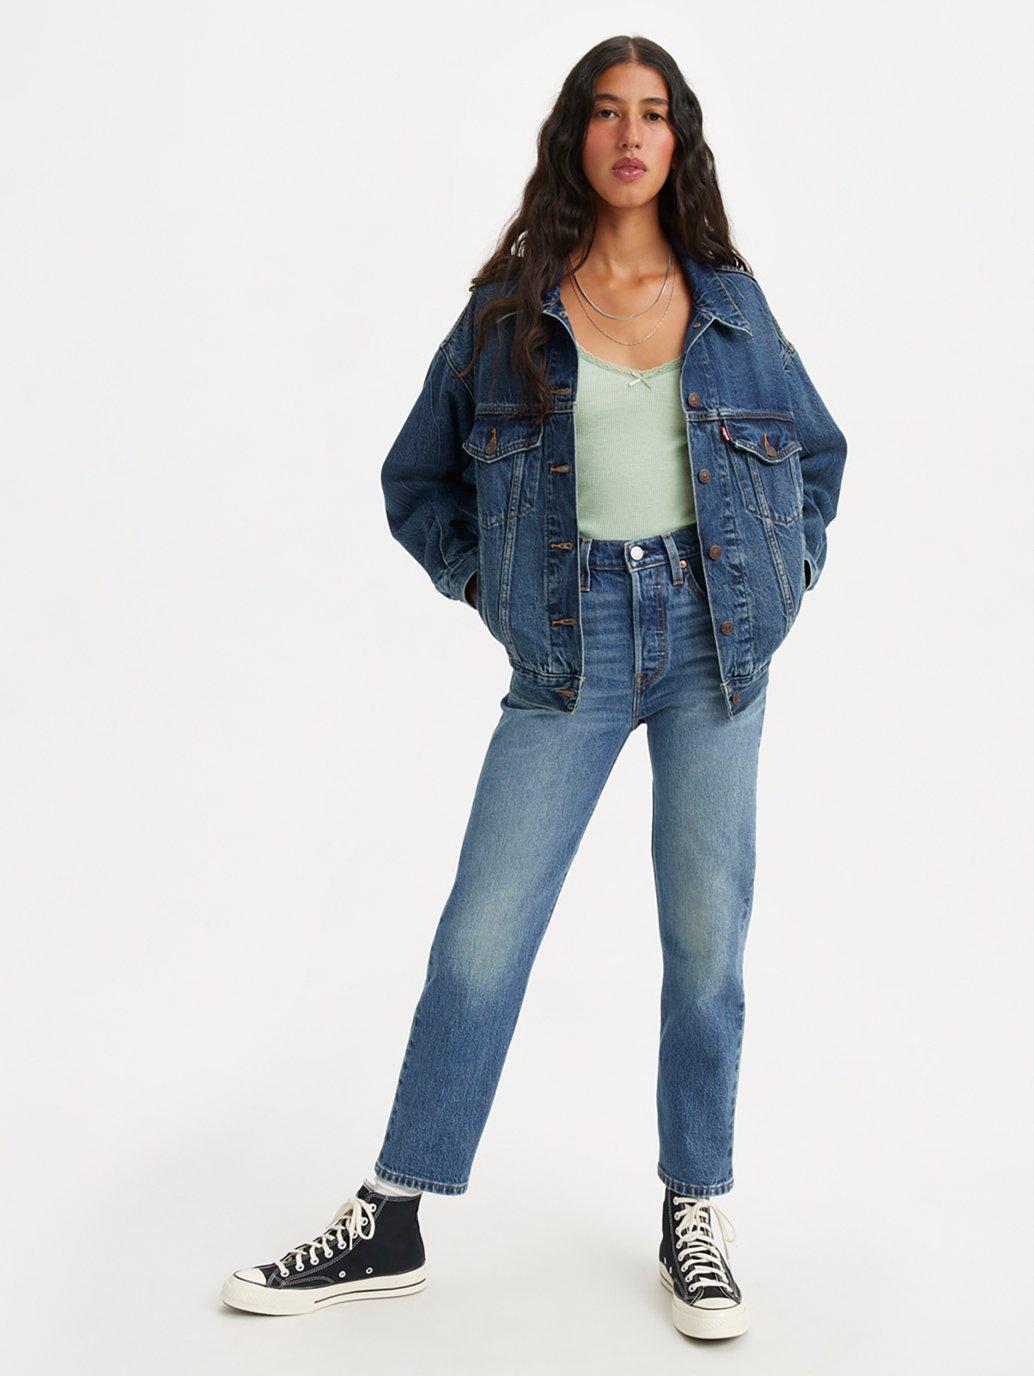 Buy Levi's® Women's 501® Original Cropped Jeans| Levi's Official Online ...